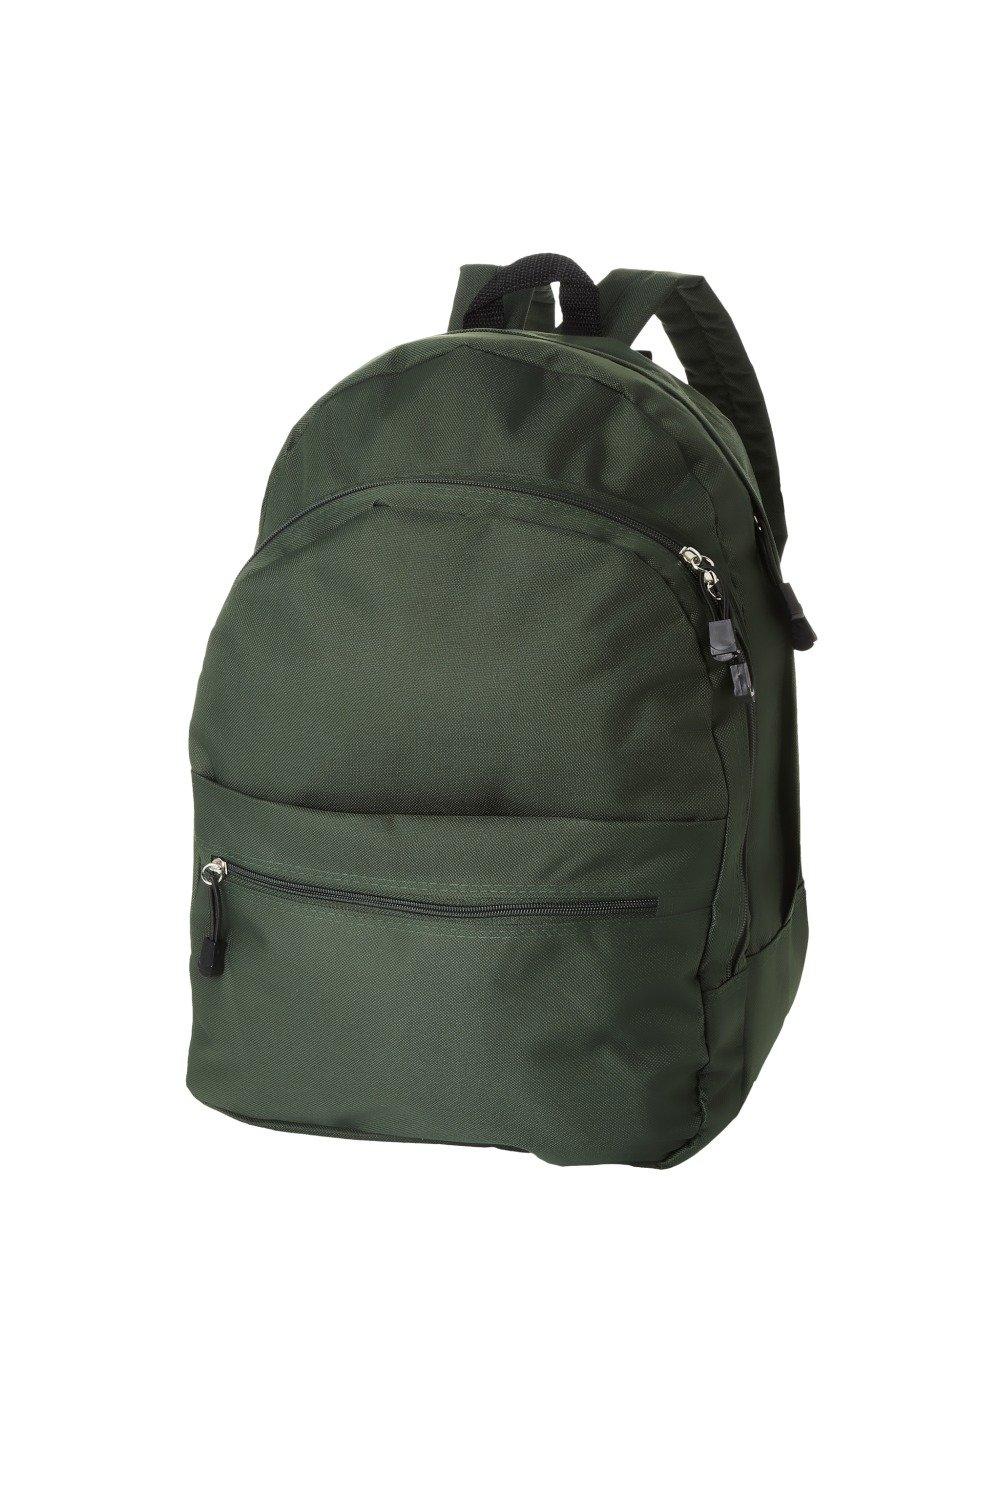 Трендовый рюкзак Bullet, зеленый рюкзак с карманом единорог 1 шт